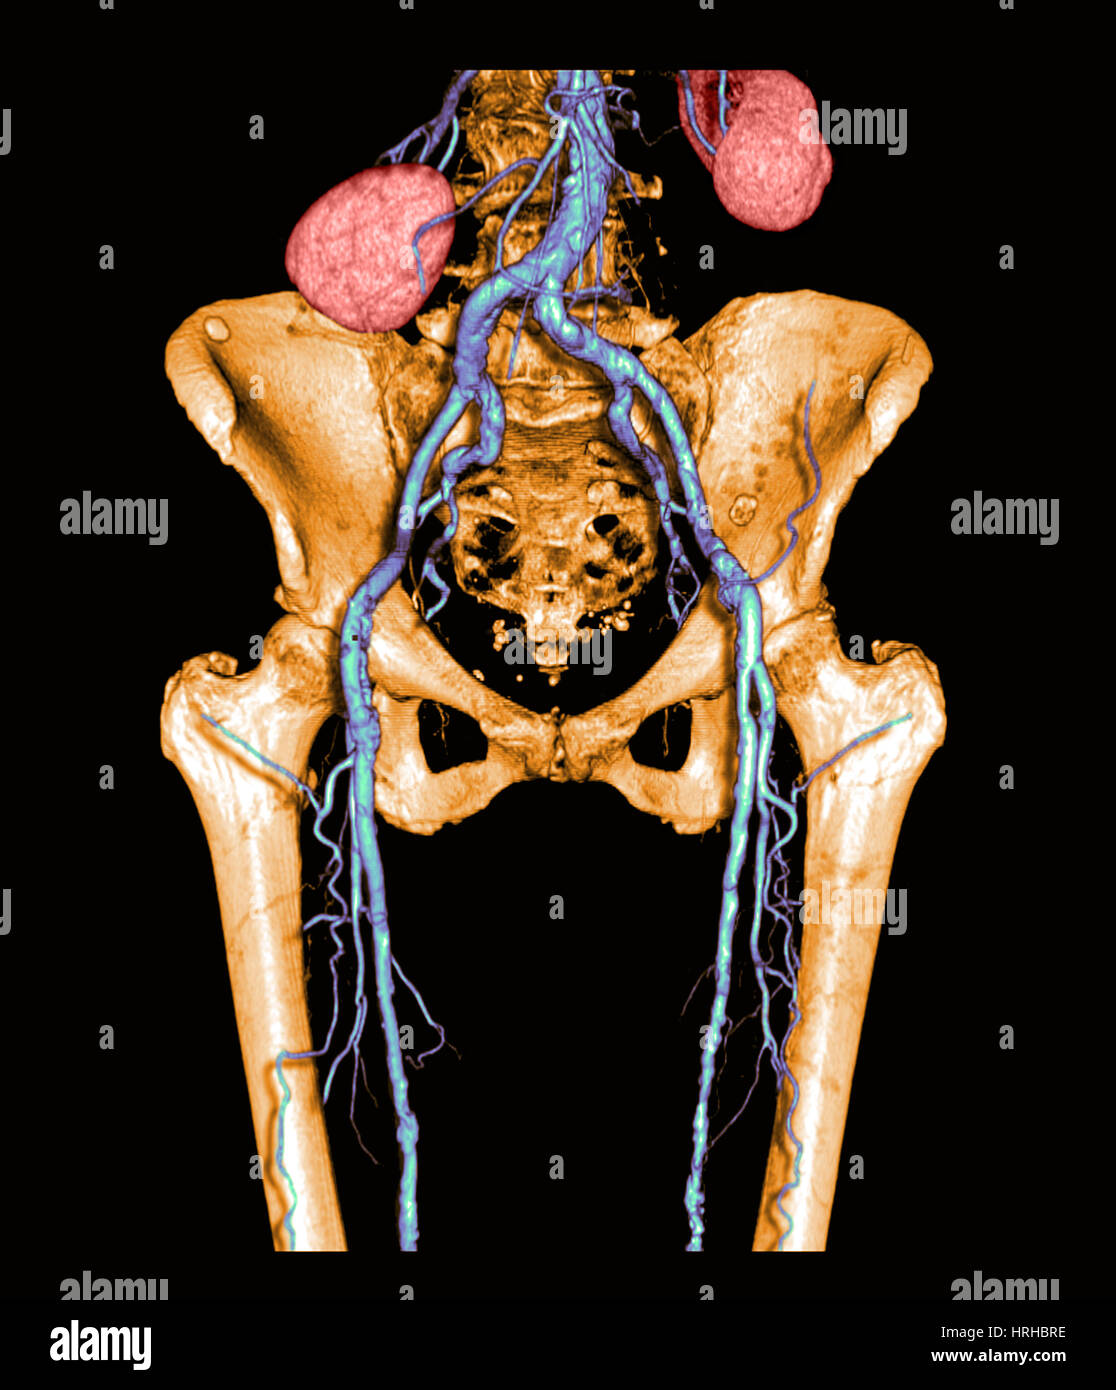 Il bacino e la parte superiore delle gambe con arteriosclerosi Foto Stock